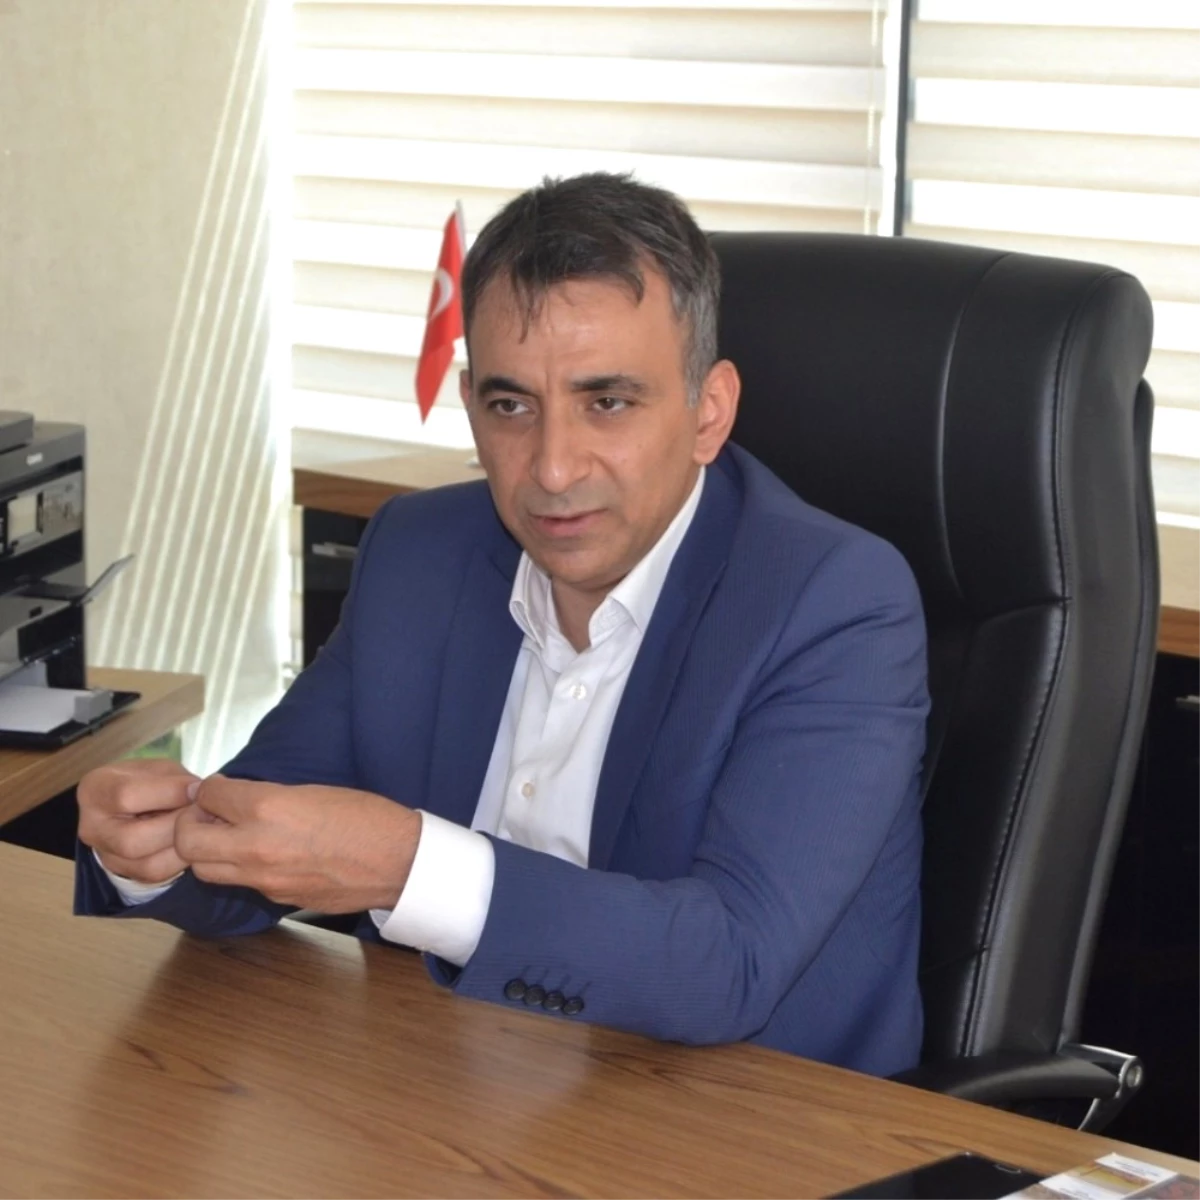 Dieder Başkanı Mehmet Veysi Can: "Diyarbakır Ülkenin Gözde Merkezi Olmalıdır"